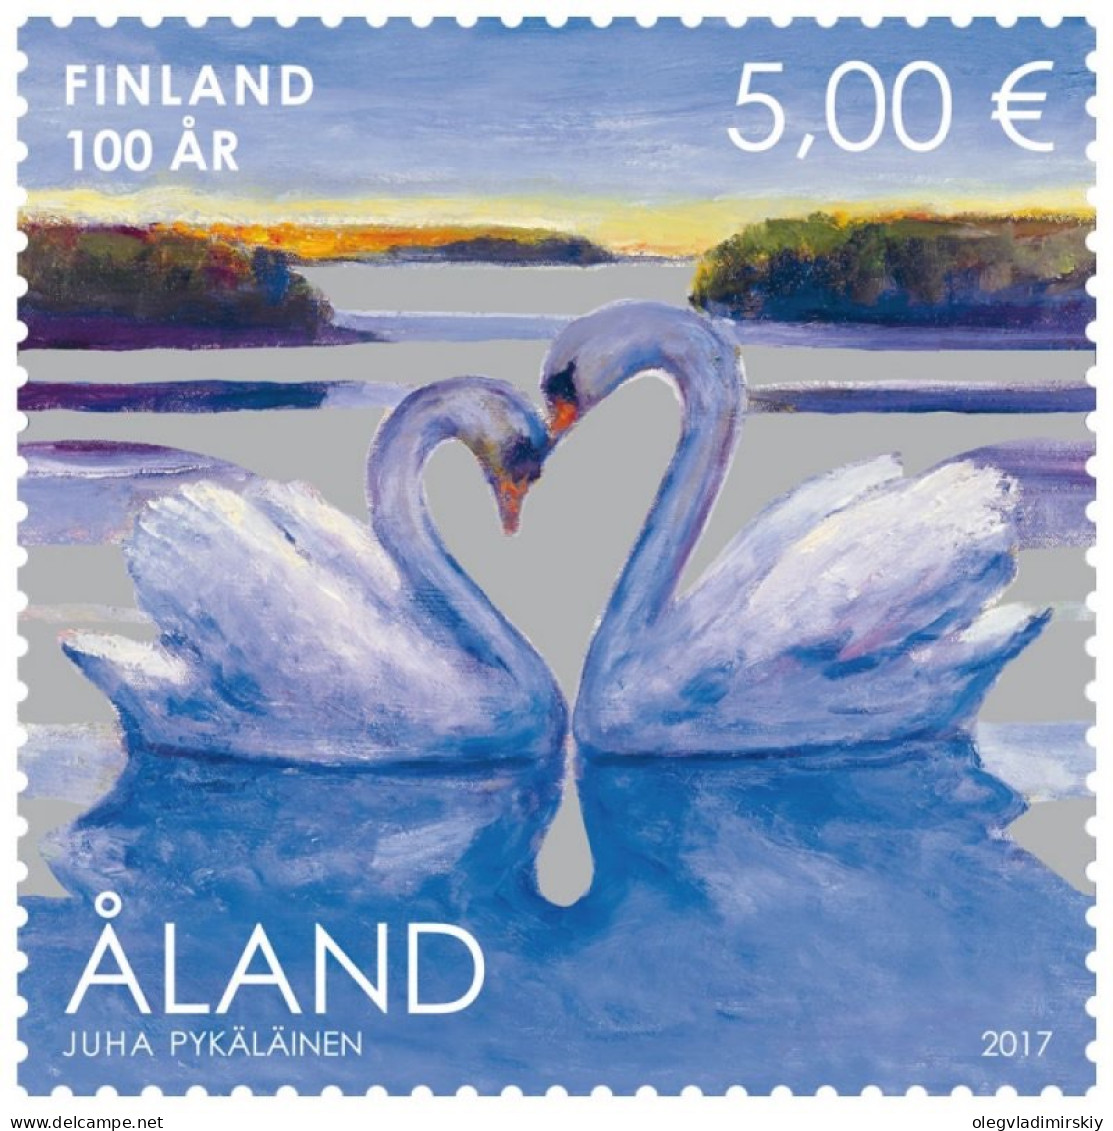 Aland Islands Åland Finland 2017 Swans Finnish Independence 100 Ann Stamp Mint - Ongebruikt